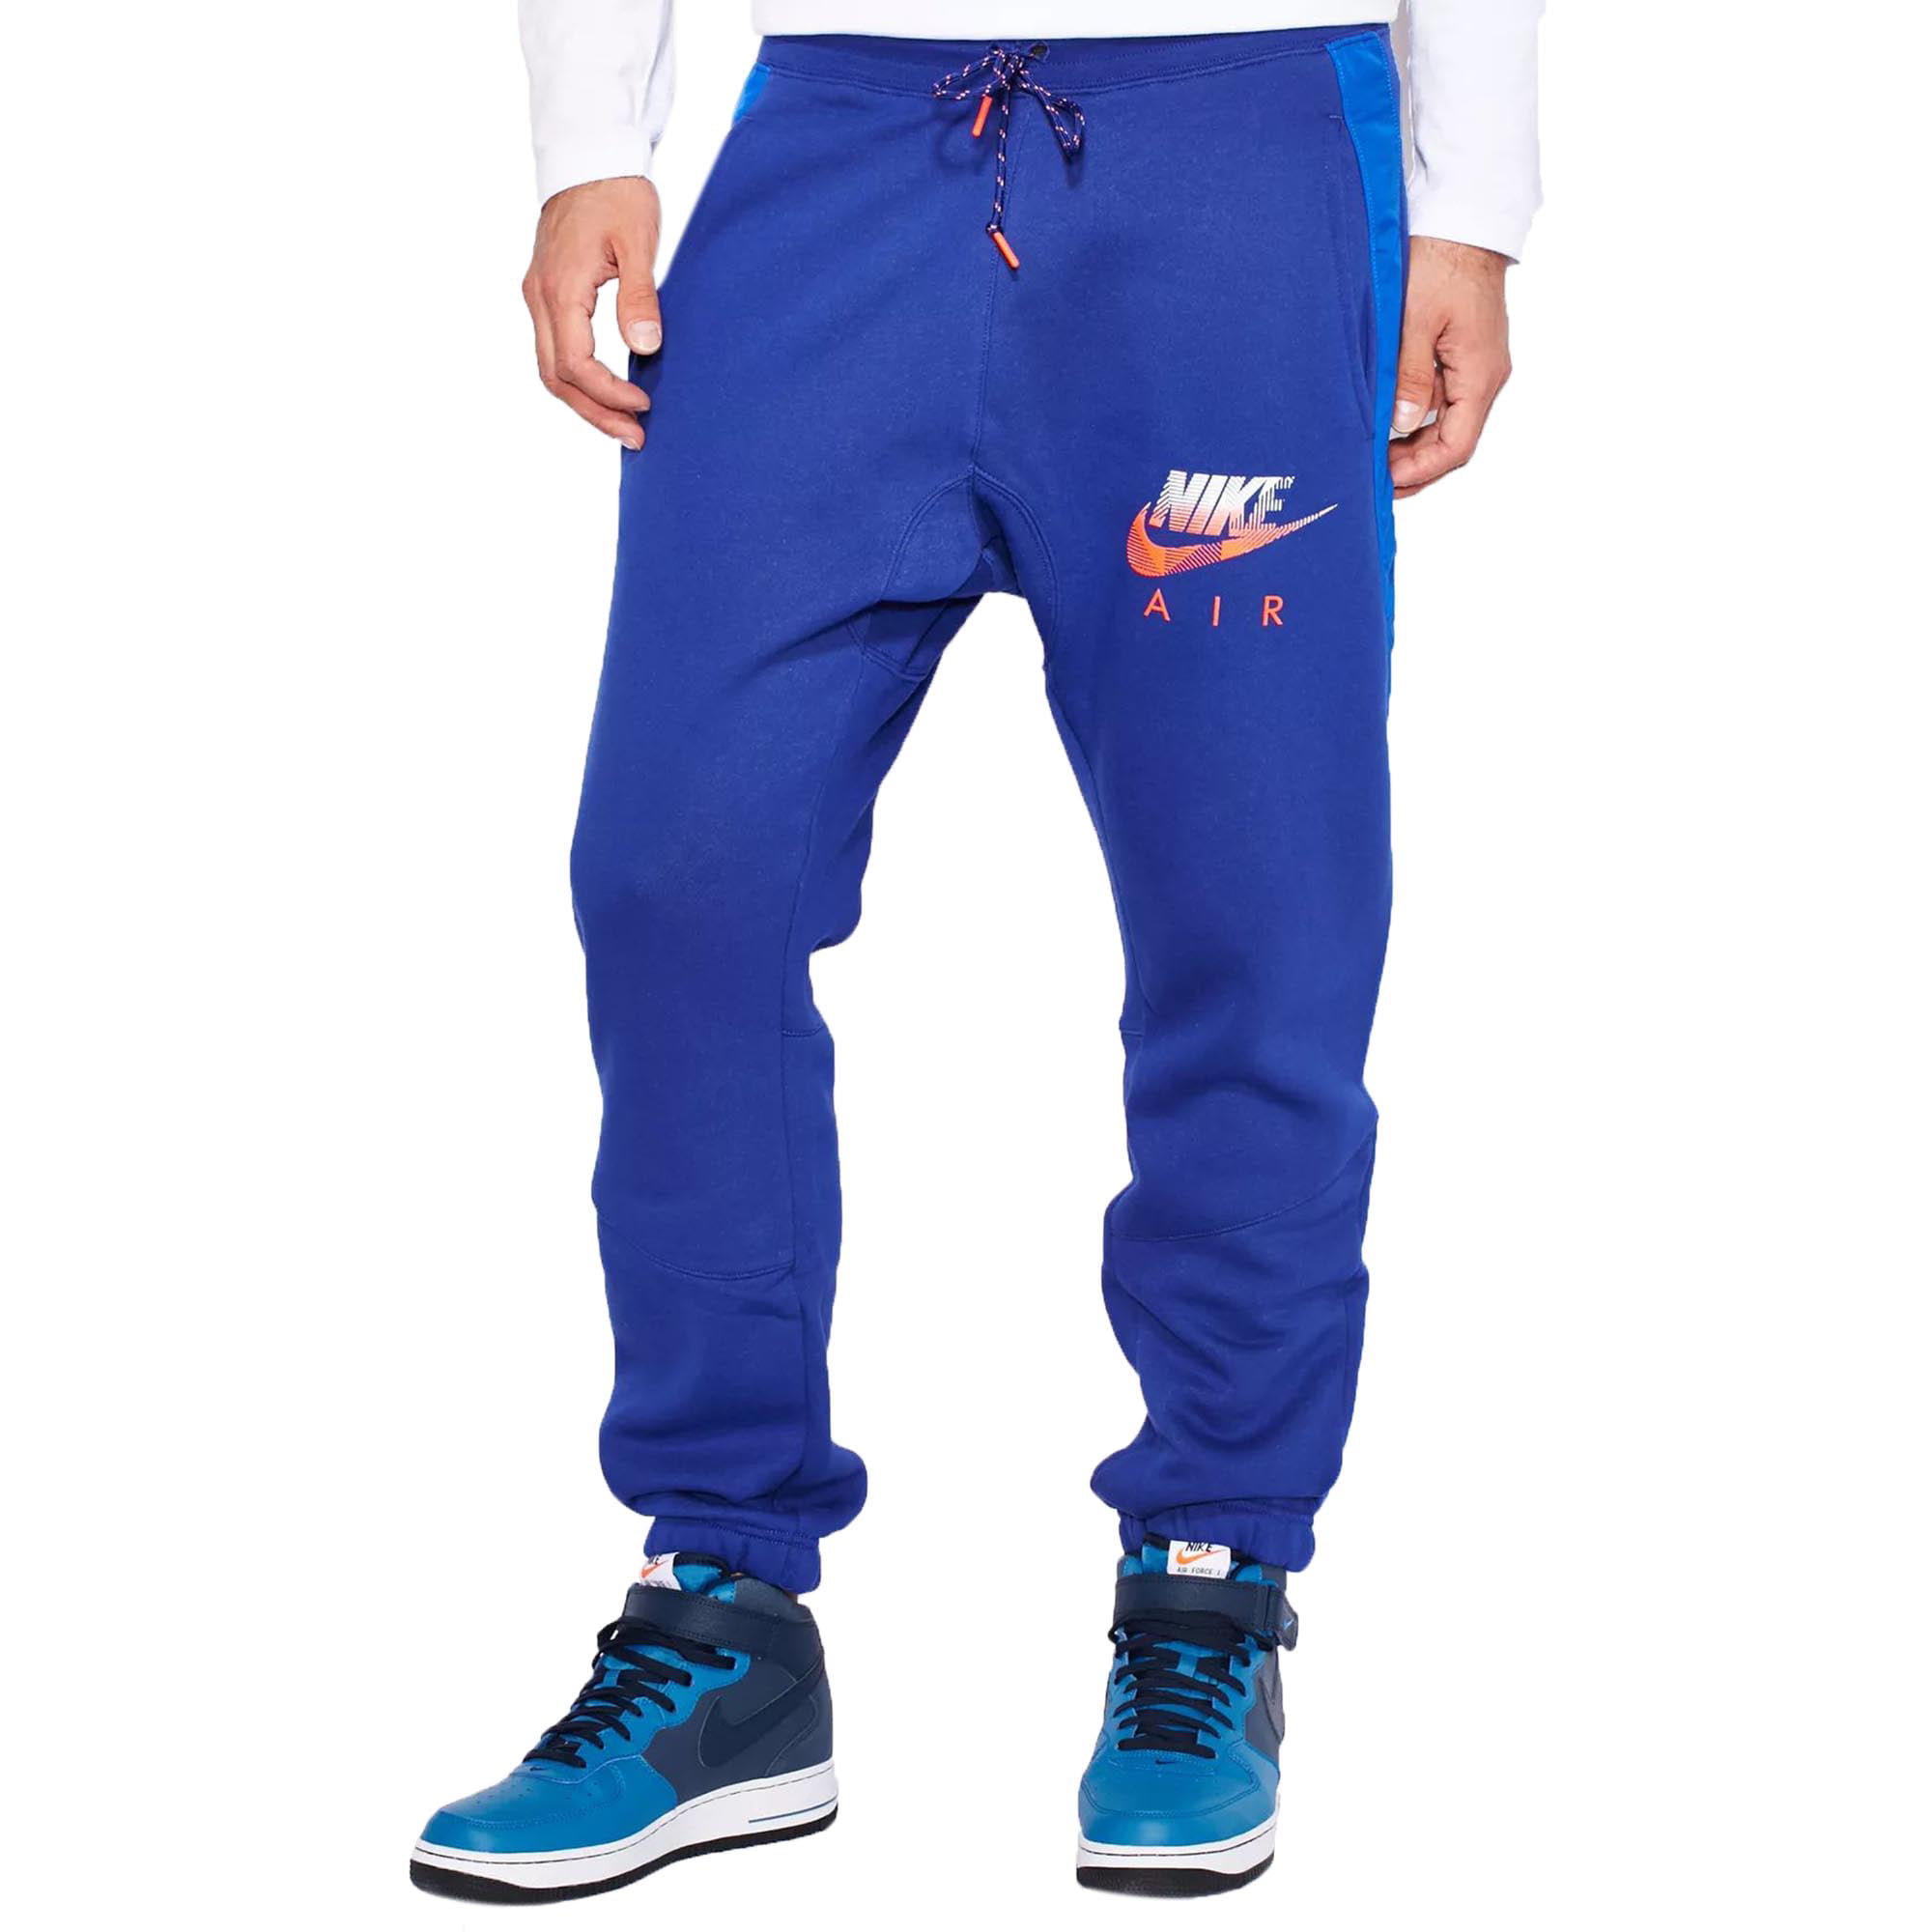 AW77 Fleece Cuff Hybrid Men's Pants Blue-Crimson 678530-455 XL) - Walmart.com